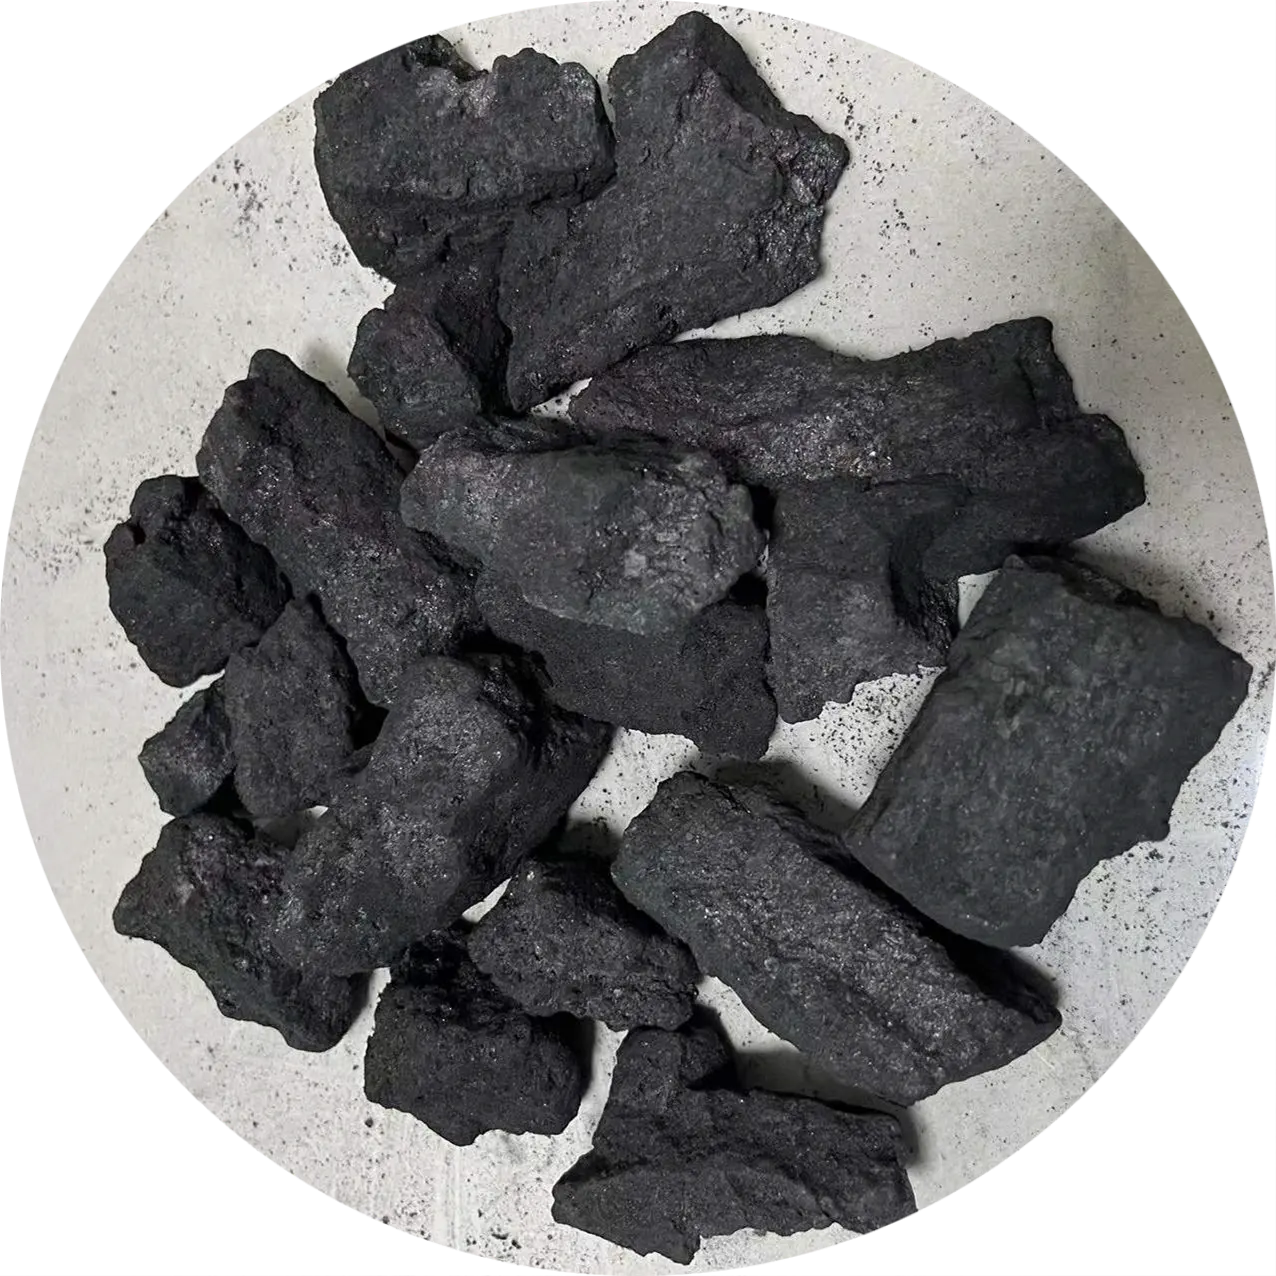 شمال الصين قابل رماد منخفض فحم الكوك 8-12 لصلب وسبائك فيرو فحم الكوك الصلب